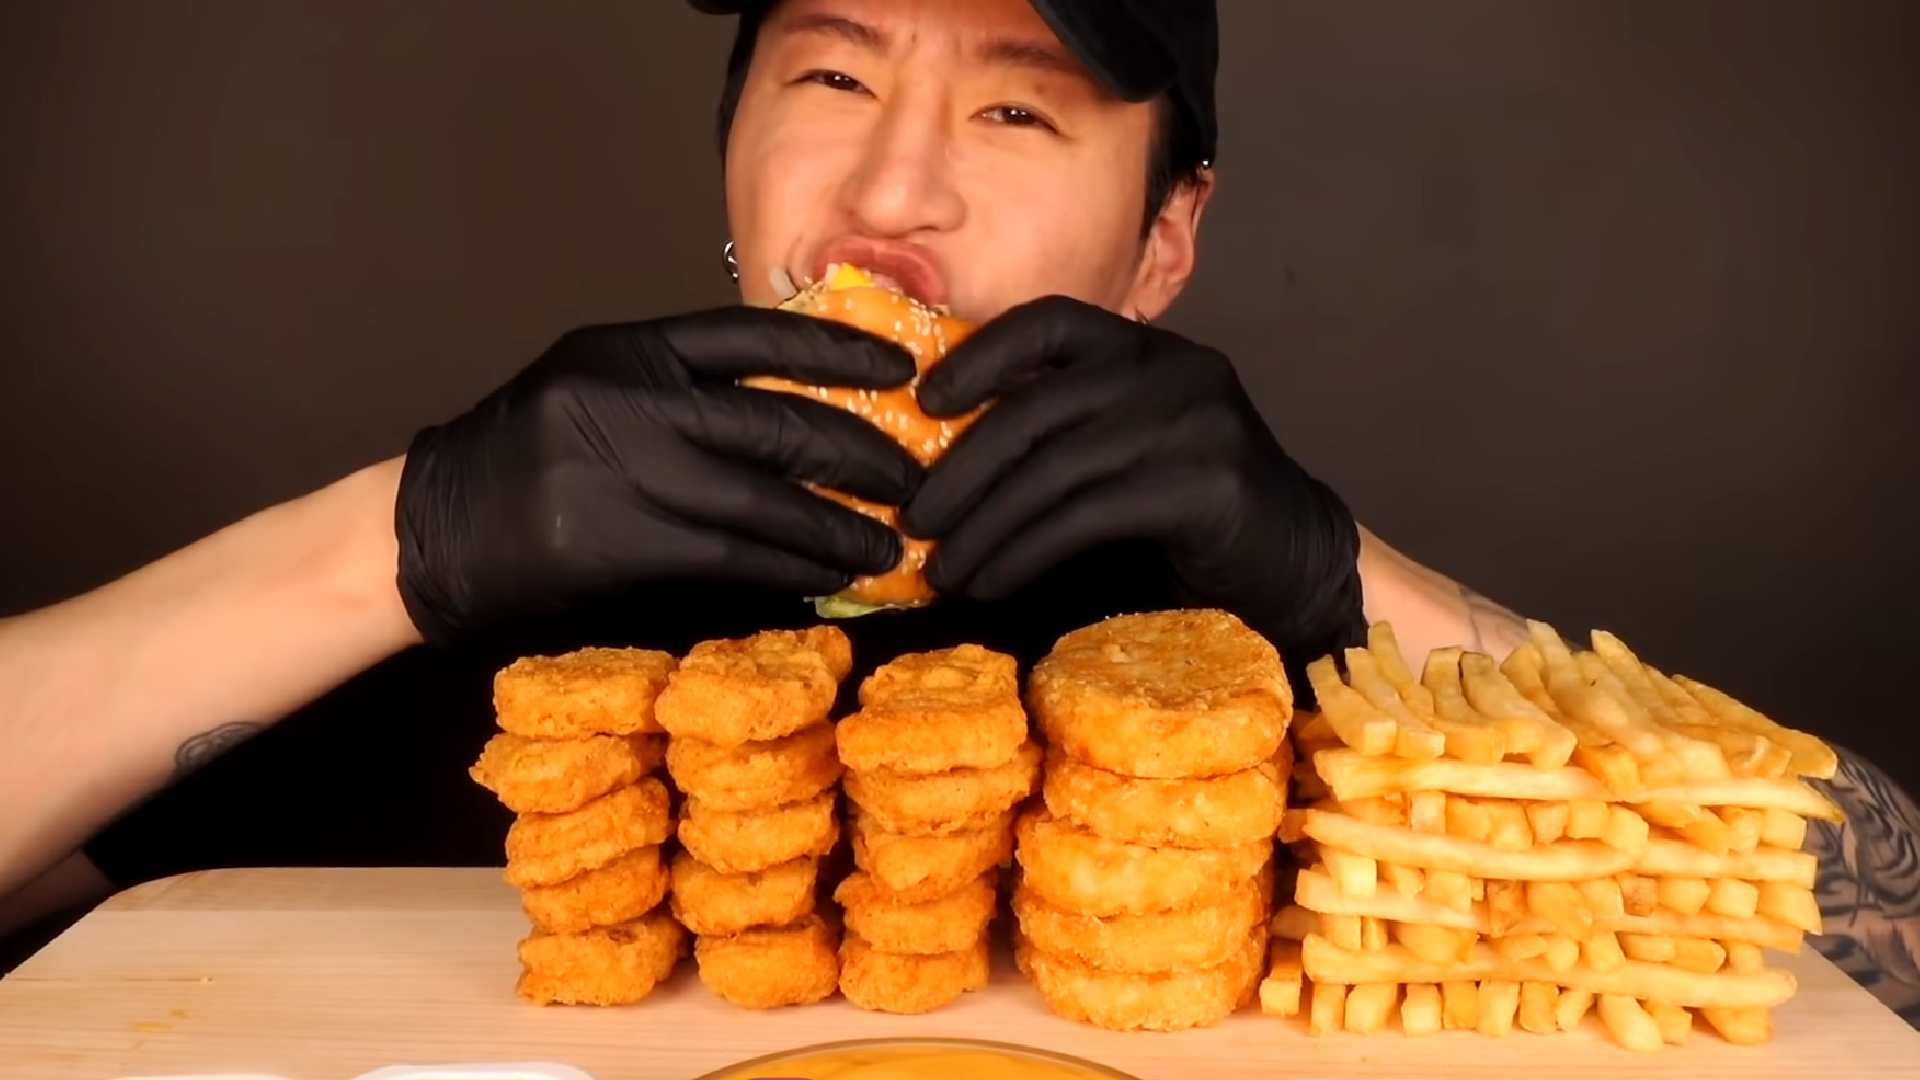 youtuber konzumujúci veľké množstvo jedla vo svojom videu